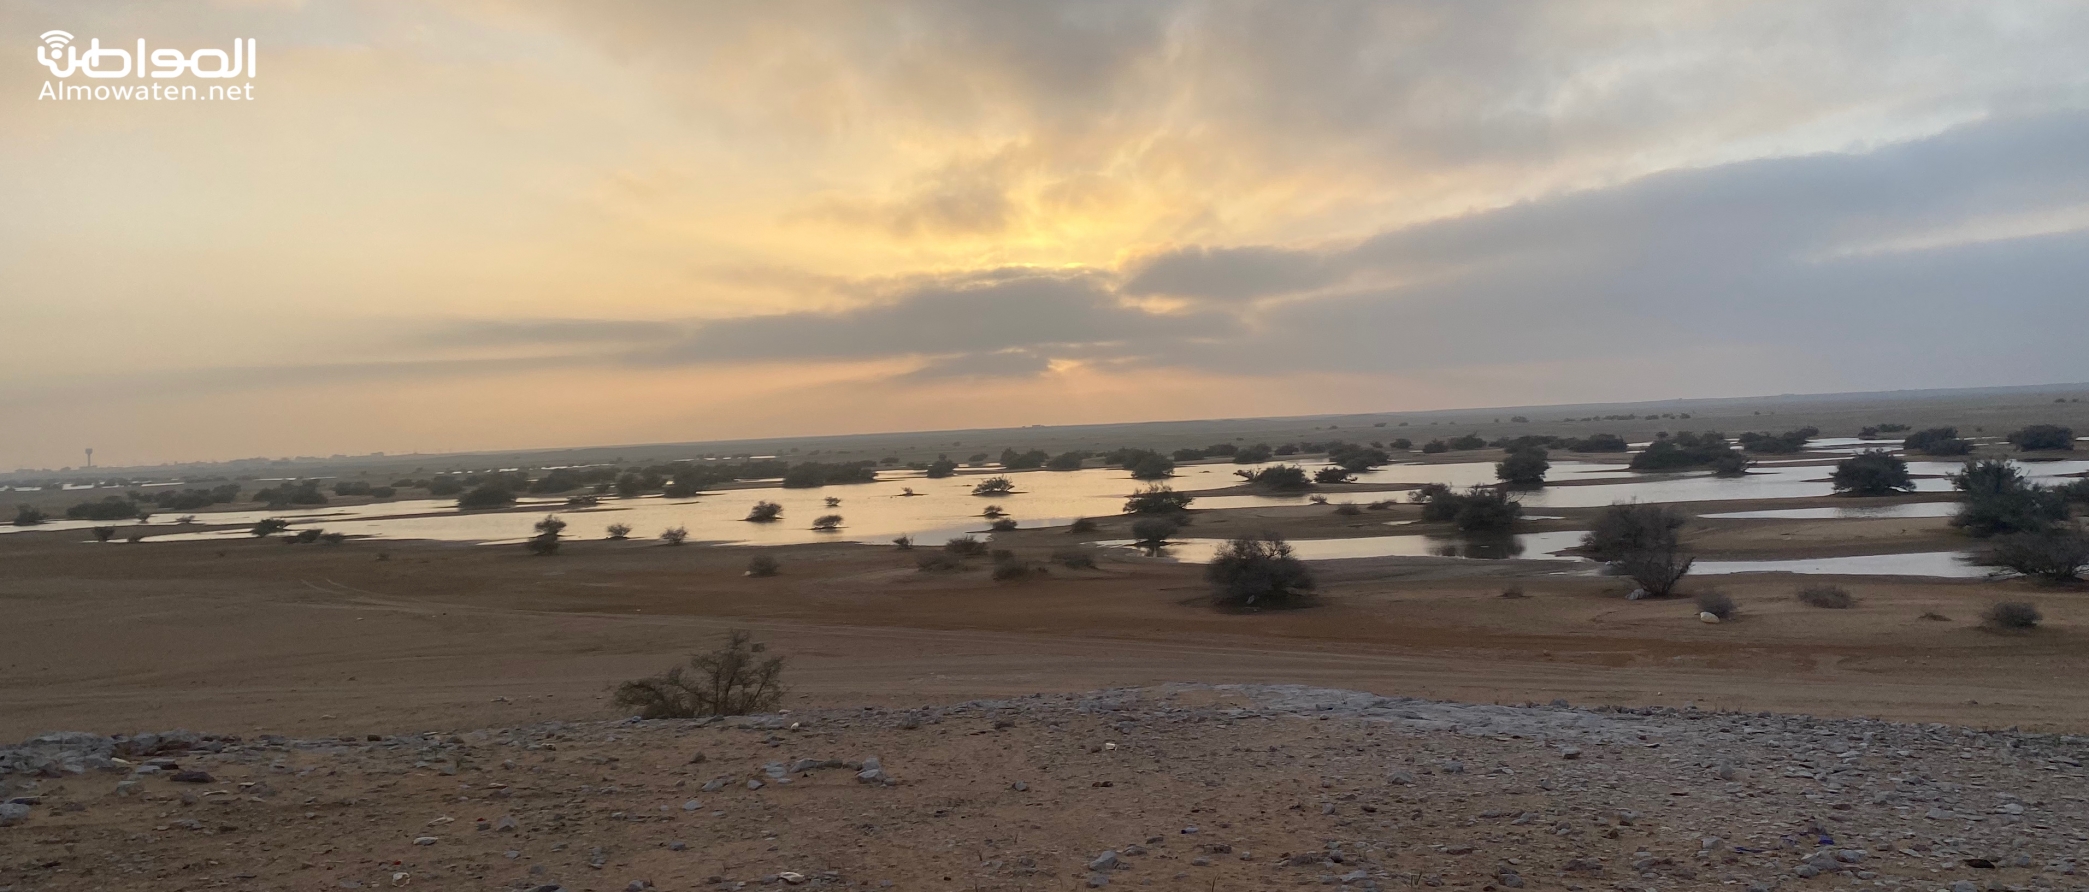 بالفيديو.. قرية درب الإبل.. ممر رئيسي لقوافل الحجاج ما بين المملكة والعراق قديمًا